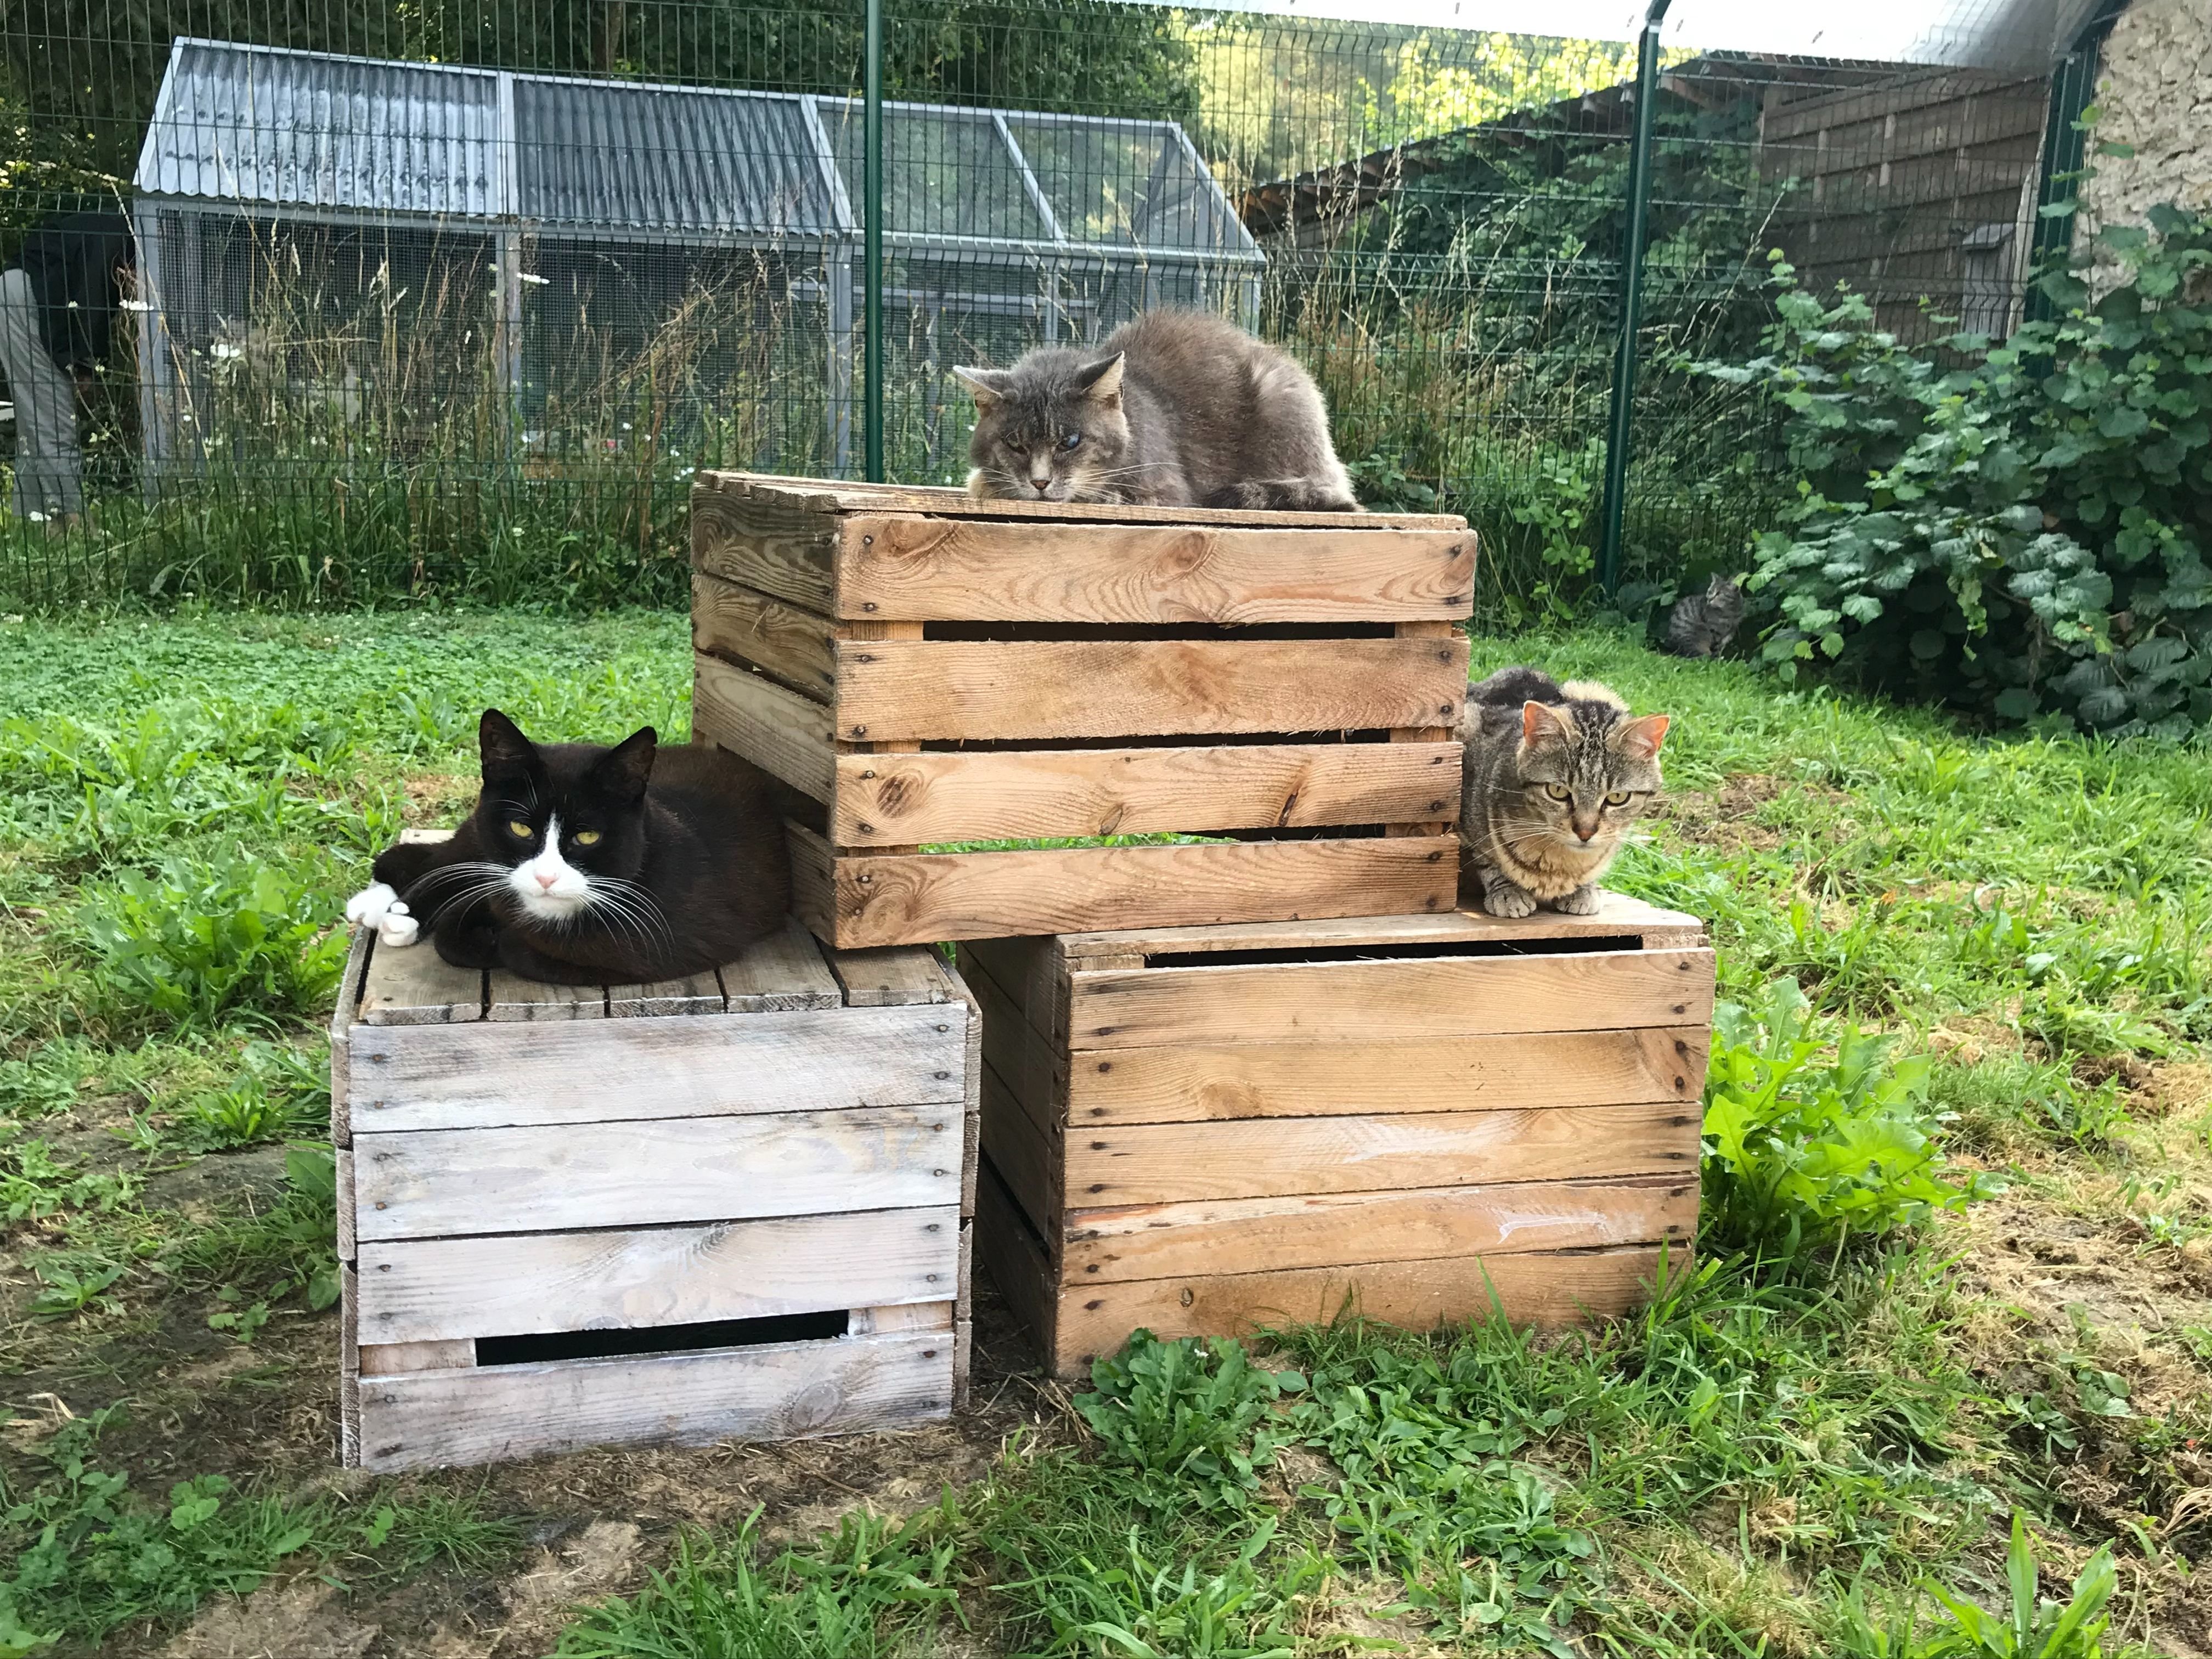 Raizeux, ce mercredi. Une centaine de chats sont actuellement accueillis par l'association Nala Chats Libres. "Je n'en ai jamais eu autant", confie Muriel Fallot, la fondatrice. LP/J.C.